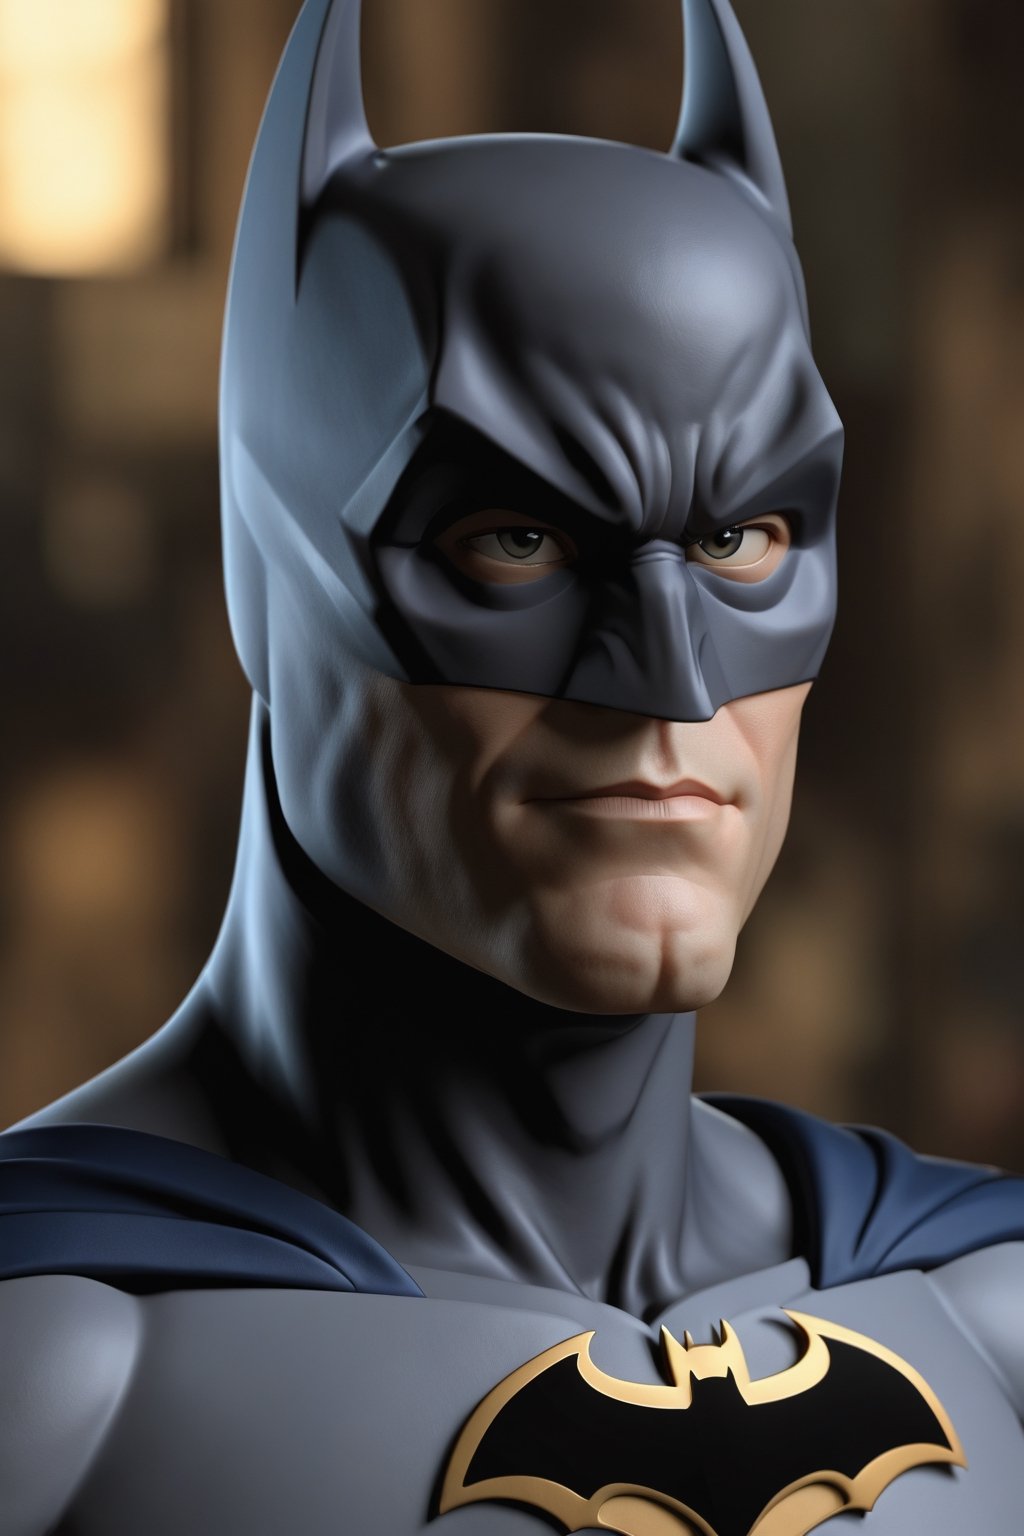 Batman es un hombre llamado Bruce Wayne que reside en la ficticia ciudad de Gotham City y se dedica a combatir el crimen. Es un atípico superhéroe sin superpoderes, pero con una gran cantidad de recursos y habilidades físicas y mentales. Es un justiciero atormentado con unos ideales muy marcados que se ve capaz de enfrentarse a todo lo que se le presente. Además, tiene una gran cantidad de villanos y aliados que pueden ser tomados en cuenta para la creación del personaje. Para crear un personaje hiperrealista, se pueden tomar en cuenta los detalles psicológicos del personaje, como su depresión, desorden de personalidad antisocial, problemas de ira, entre otros. También se pueden tomar en cuenta los detalles físicos, como su traje, gadgets y la ciudad de Gotham. Para crear un personaje hiperrealista, se pueden tomar como referencia los trabajos de artistas que se dedican al hiperrealismo, como Franco Clun, quien realiza dibujos a lápiz de gran detalle y realismo